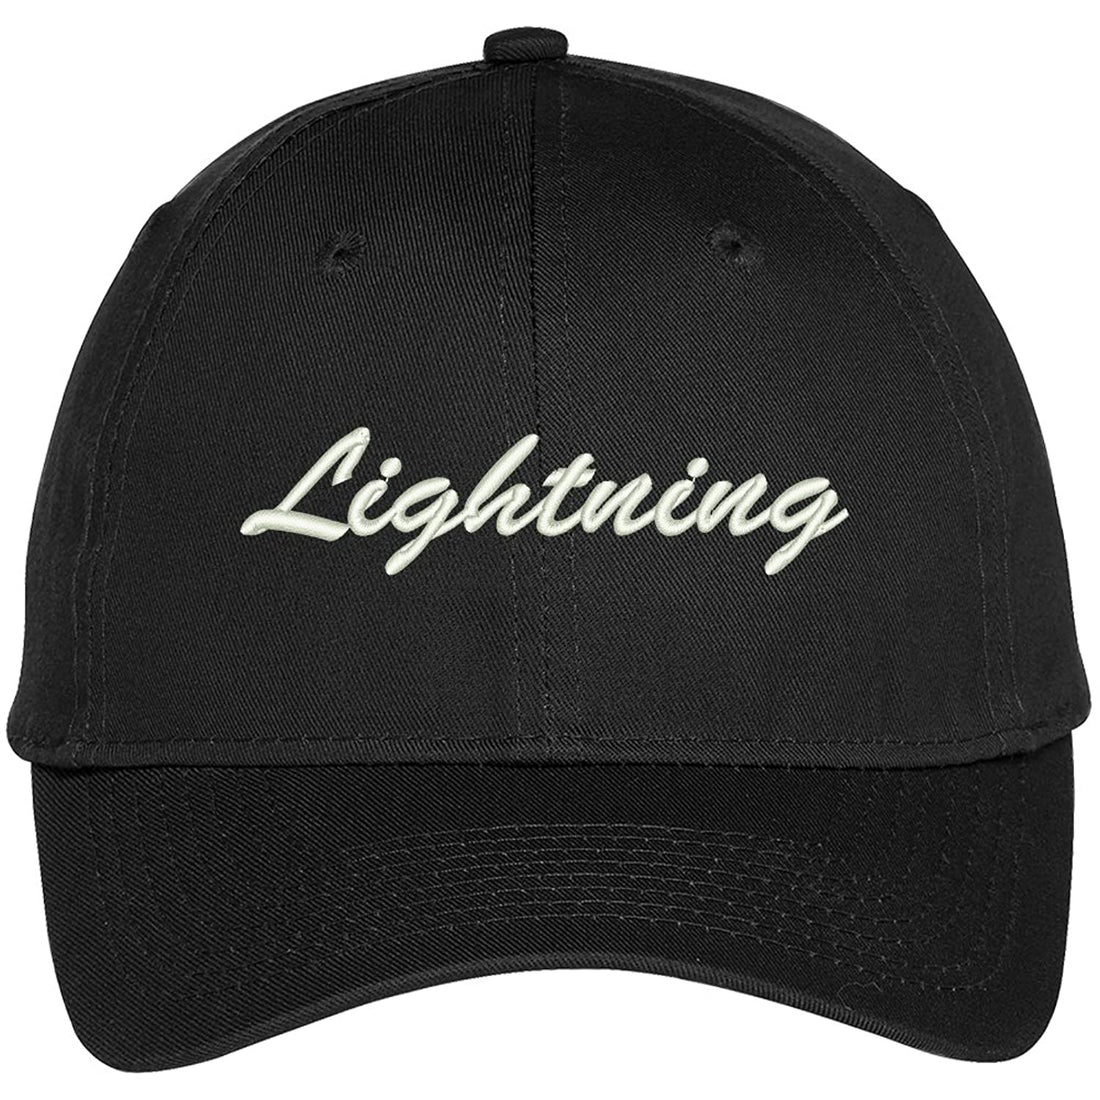 Trendy Apparel Shop Lightning Embroidered Precurved Adjustable Cap